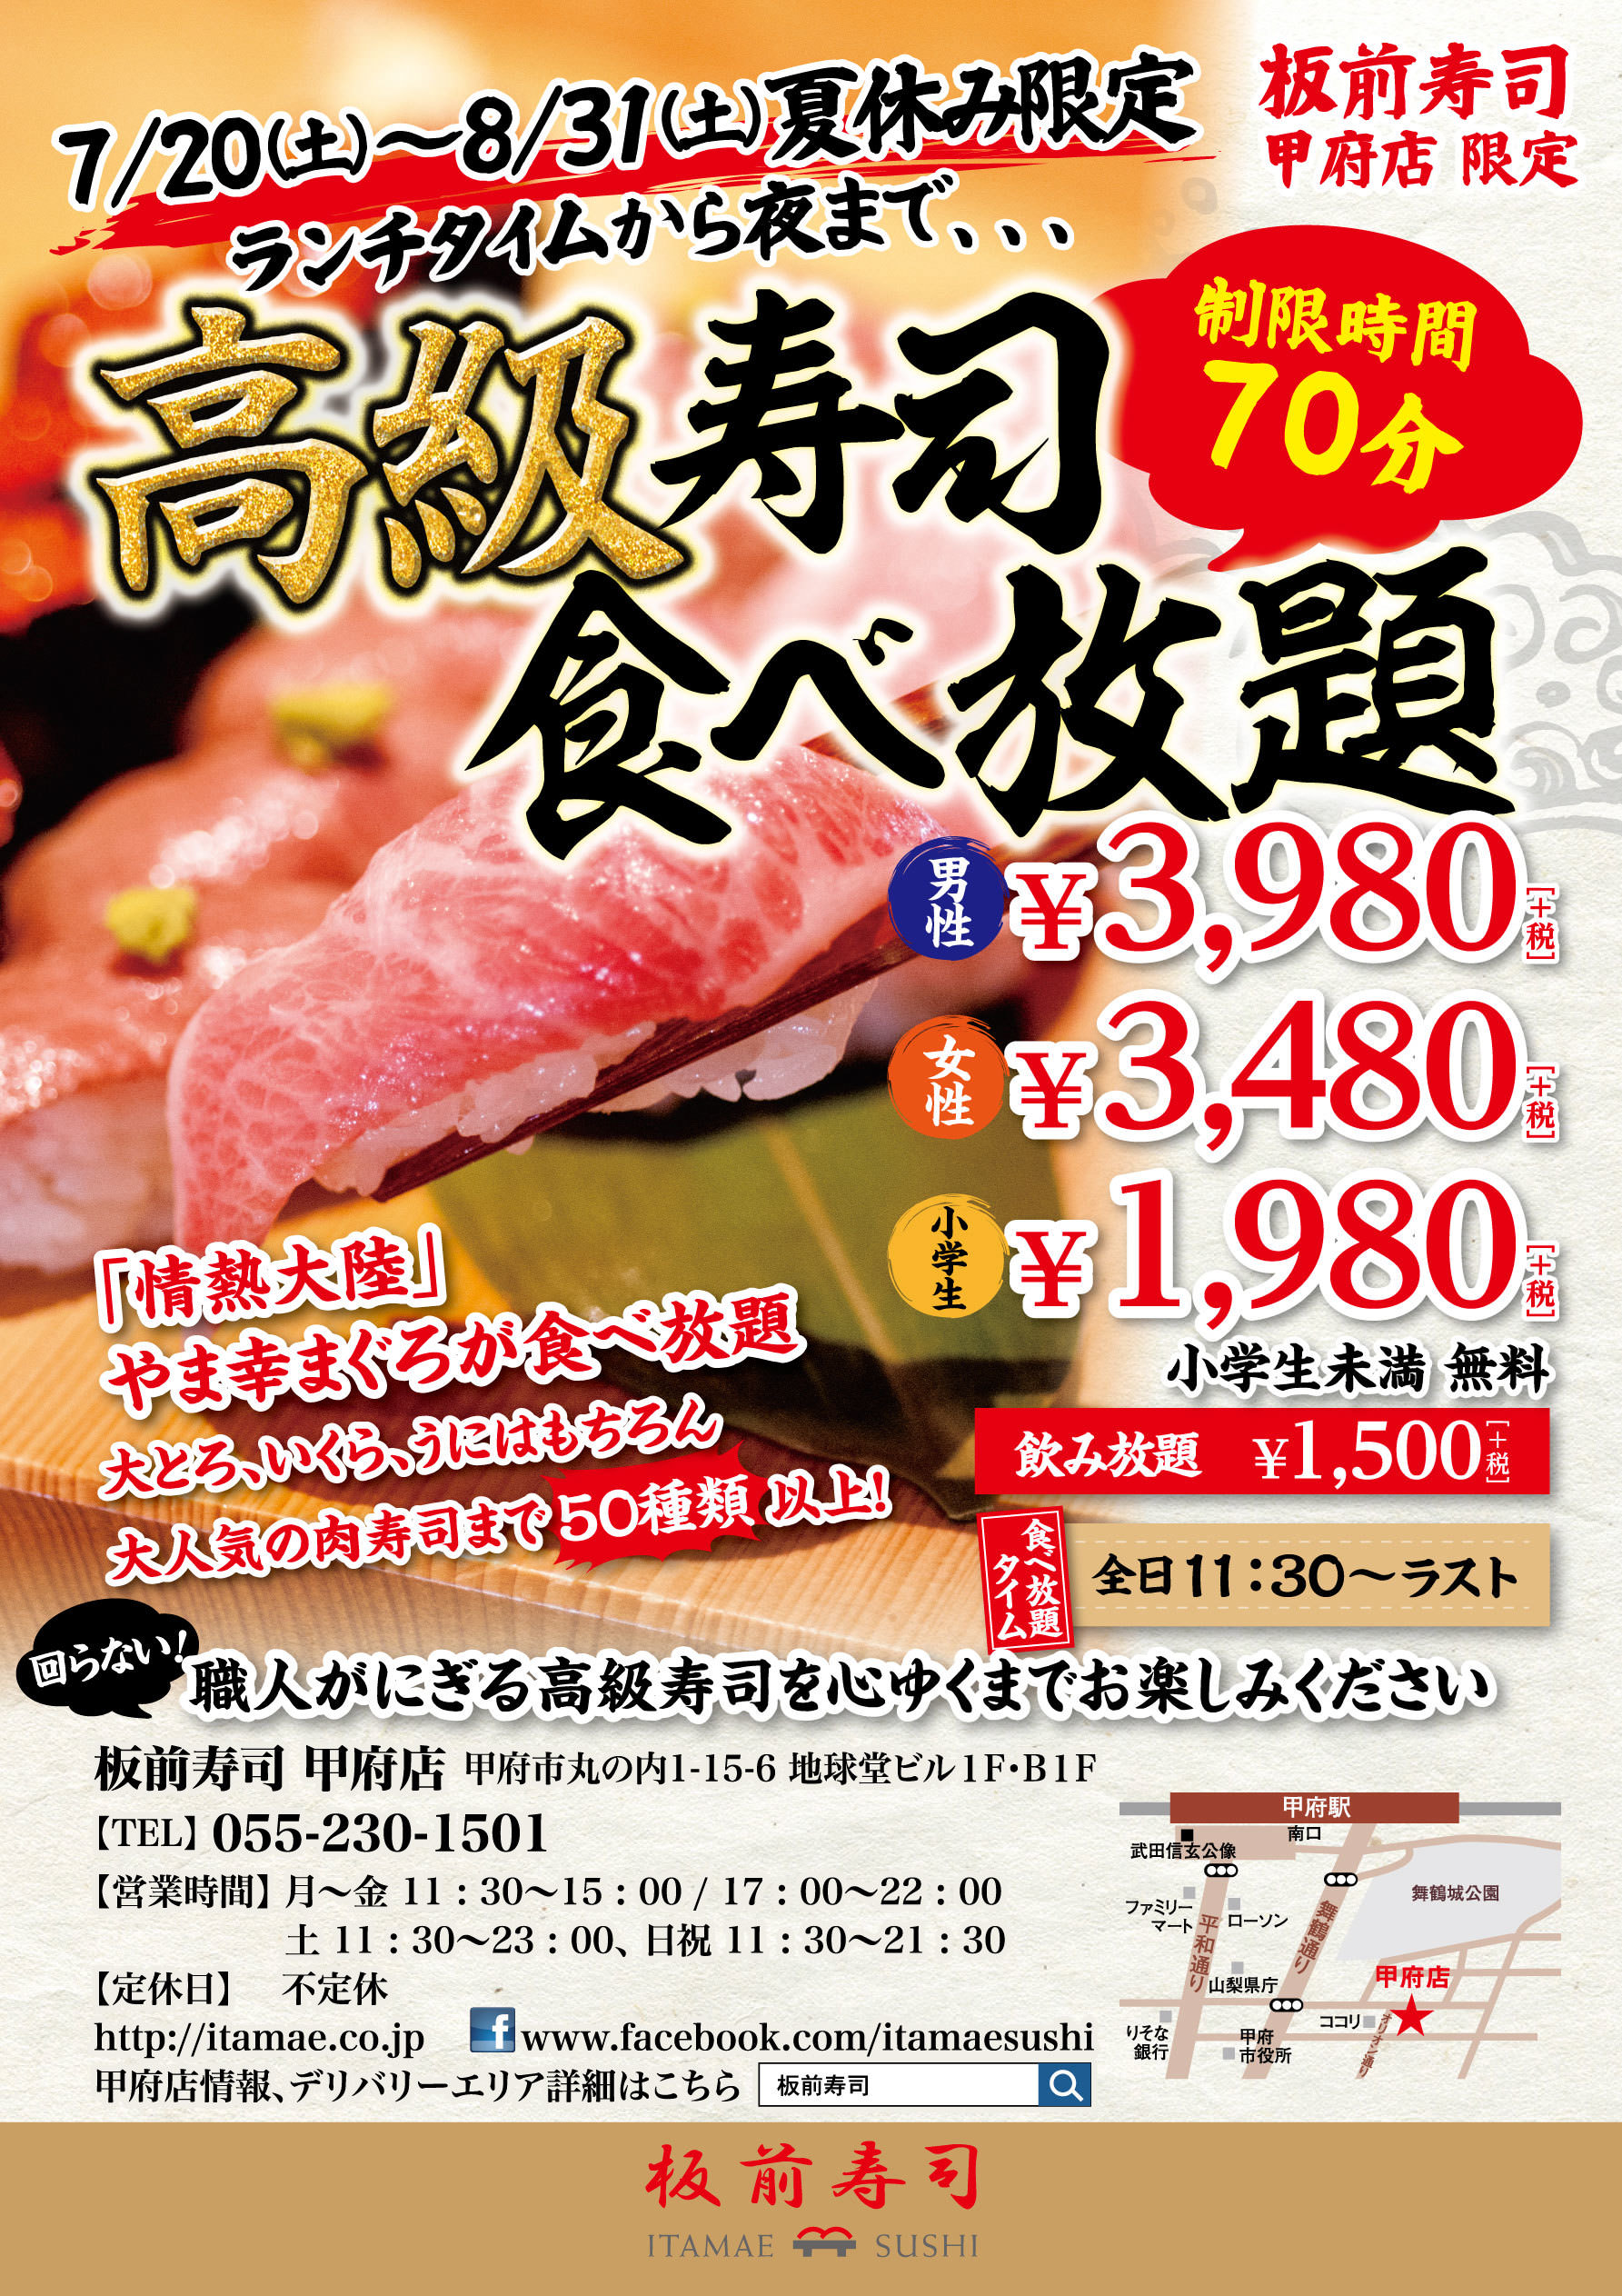 クラフトジンとジュニパーベリーに焦点を当てた新しい食イベント『JUNIPER TOKYO』を青山ファーマーズマーケットで初開催！